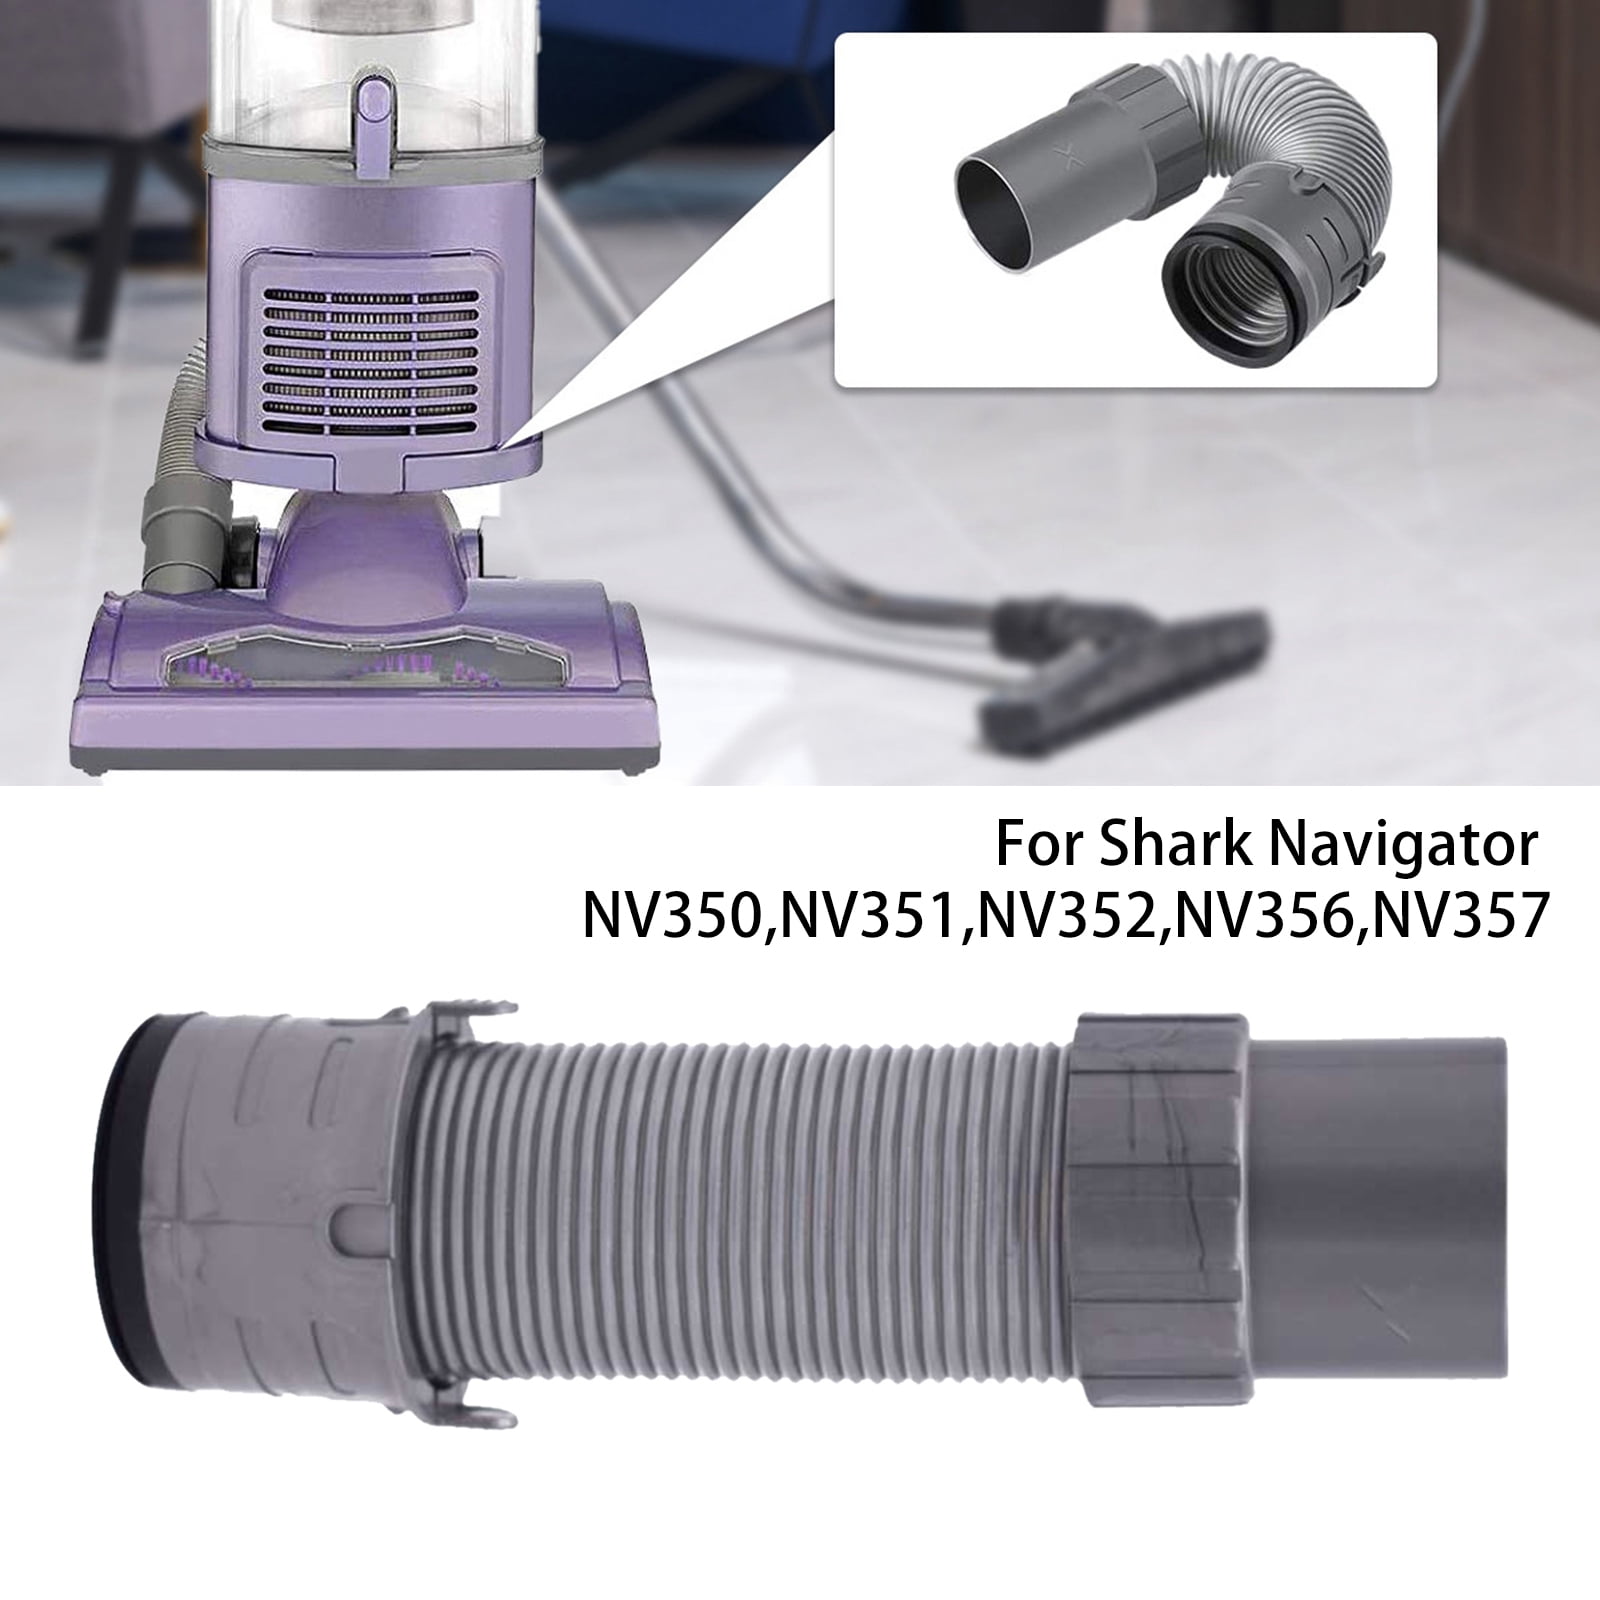 . Shark Navigator Lift-Away Grill NV350 NV351 NV352 UV440 Hepa Filter CoverDoor 